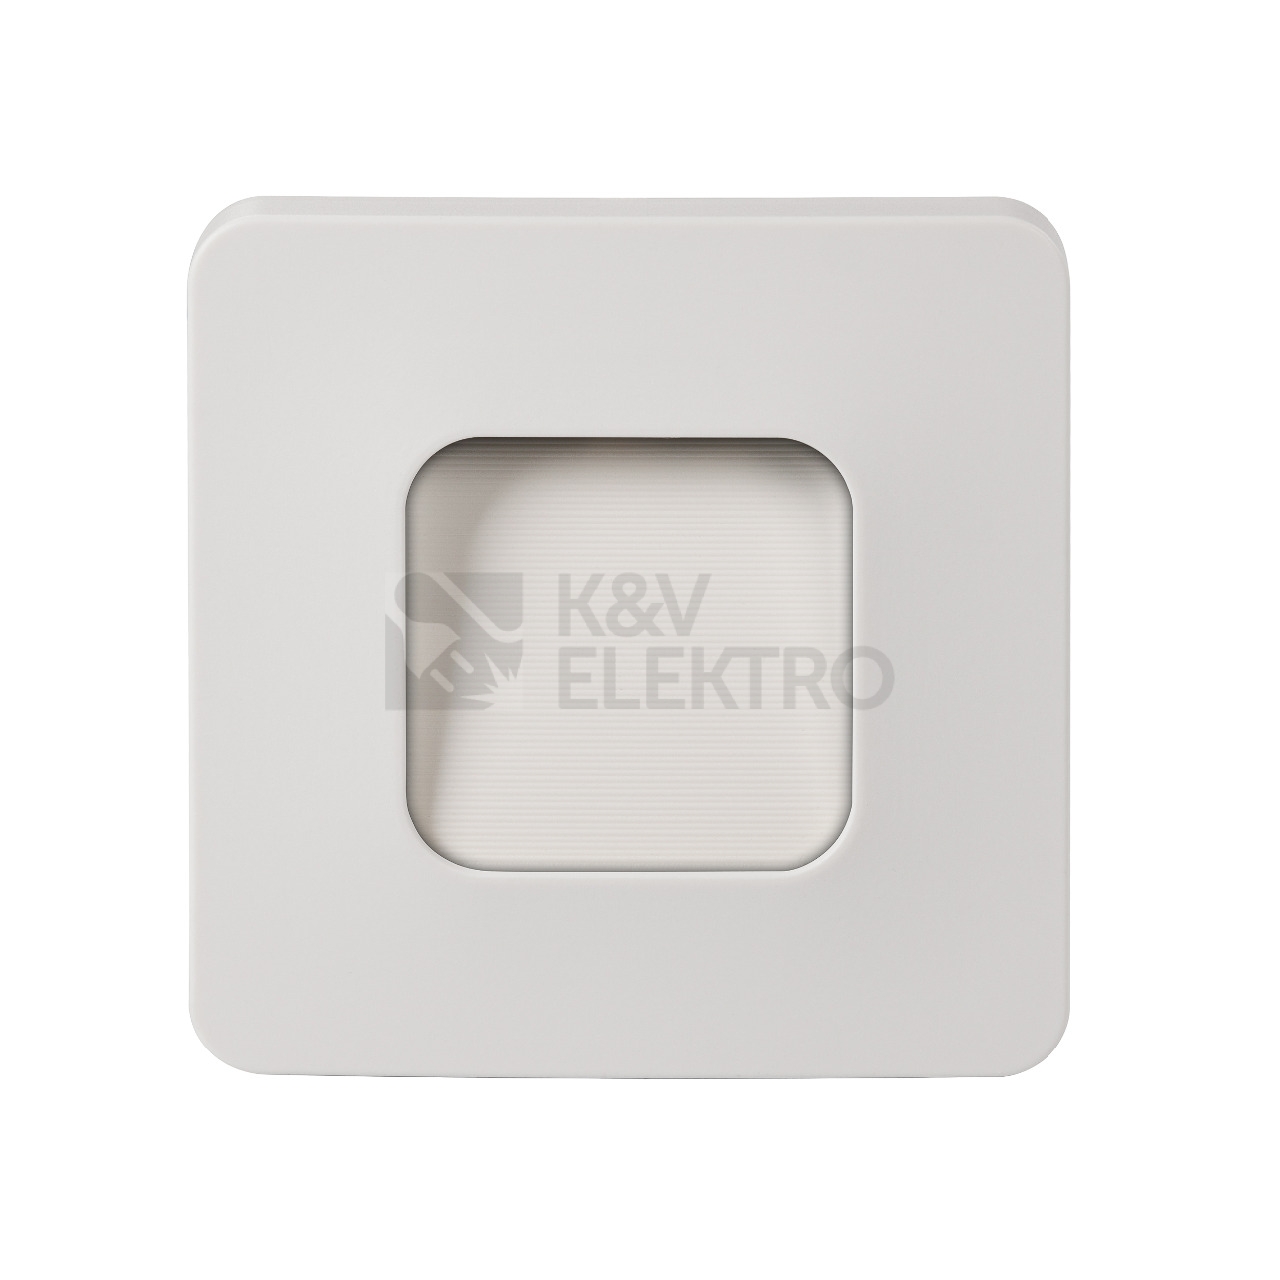 Obrázek produktu Svítidlo orientační/noční 230V ZAMEL 17-221-81 stříbrné 0,9W studená bílá 0